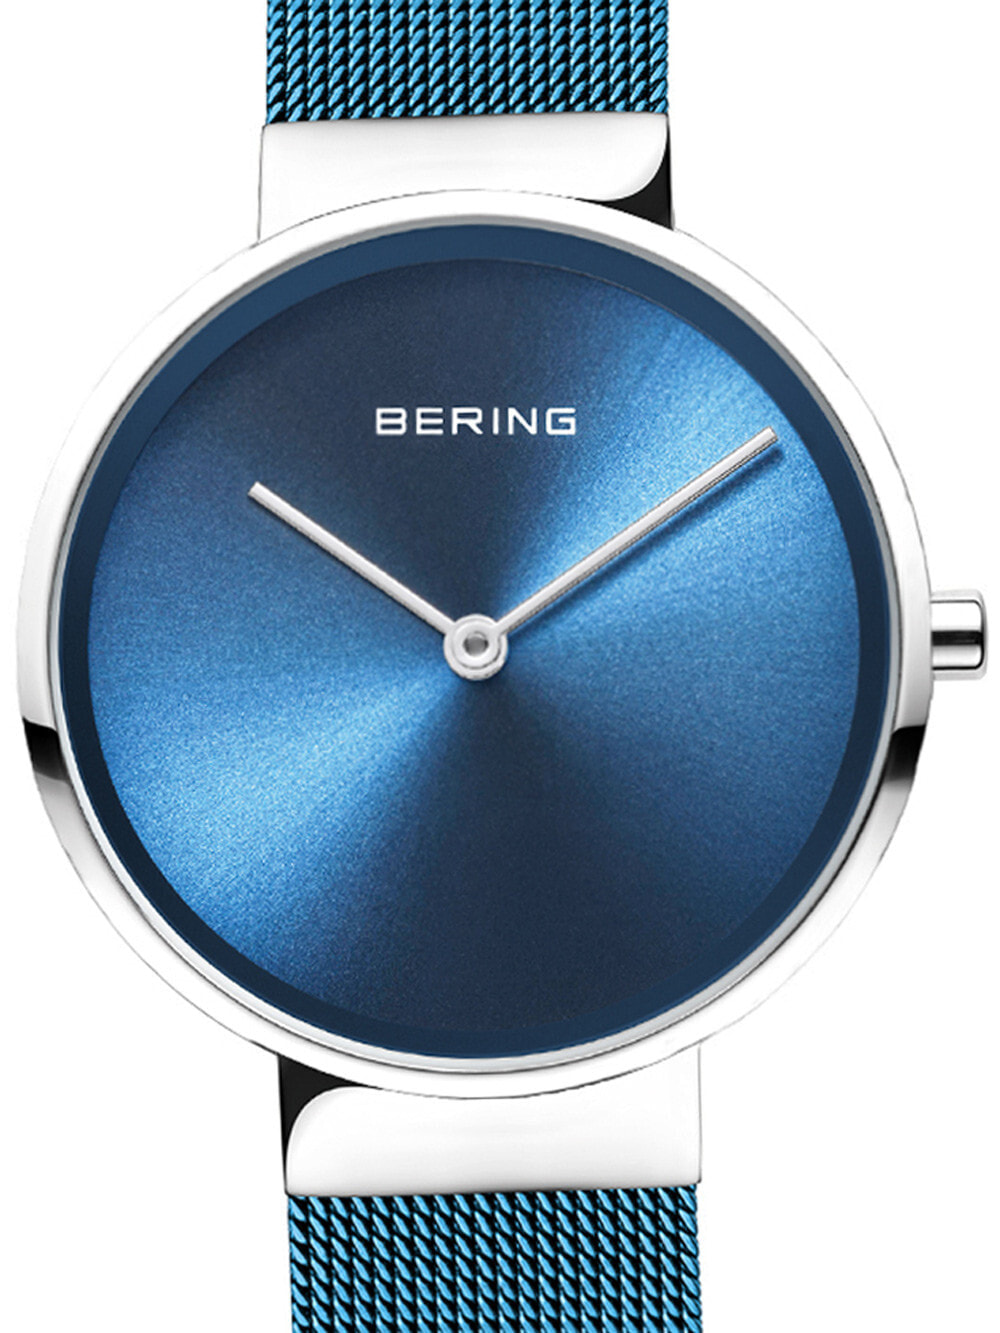 Женские наручные кварцевые часы Bering браслет из нержавеющей стали. Водонепроницаемость: 5 АТМ.  Царапины, антибликовое сапфировое стекло защищают ваши часы.